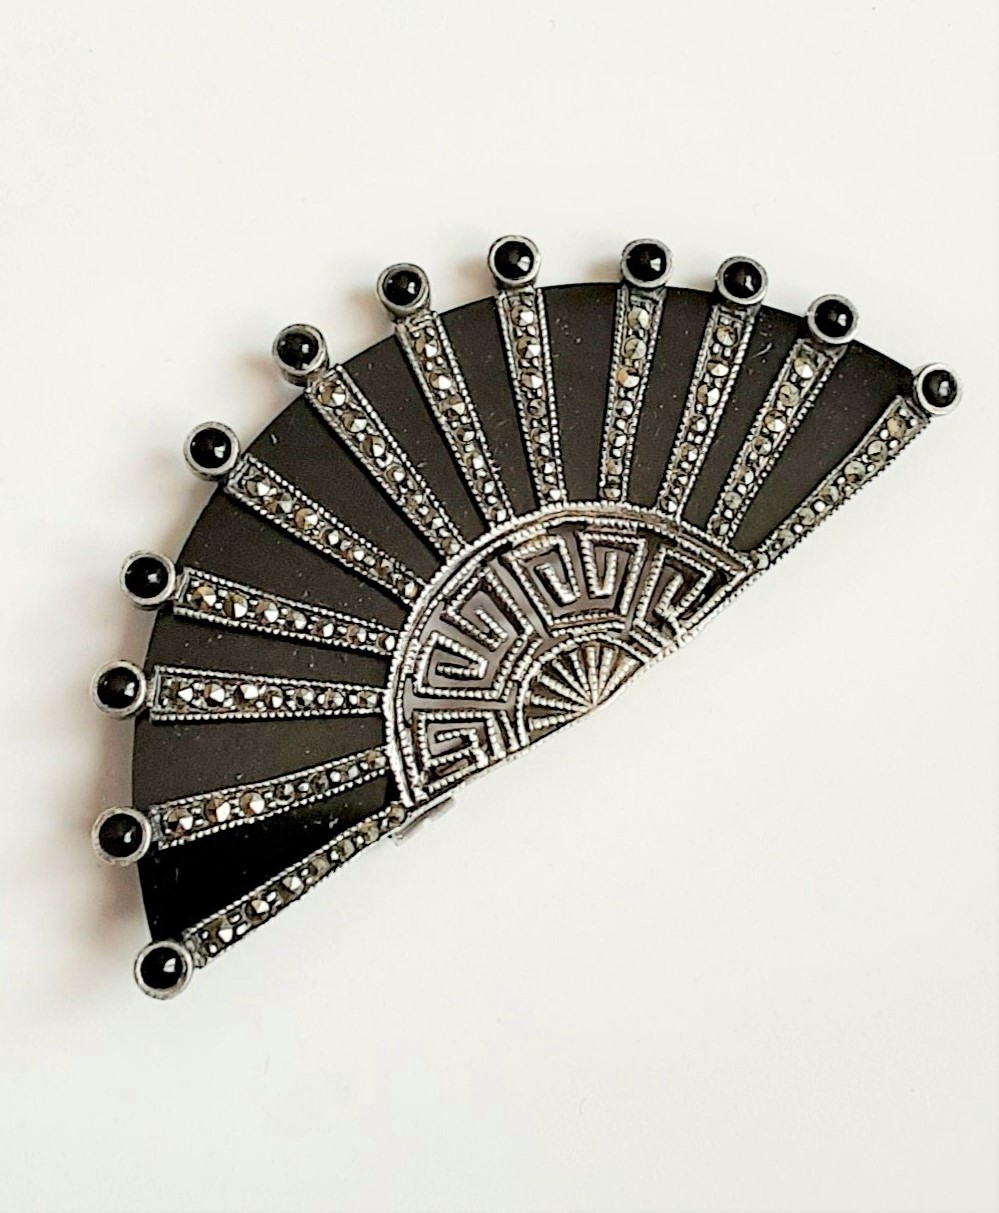 Deco style fan shaped brooch